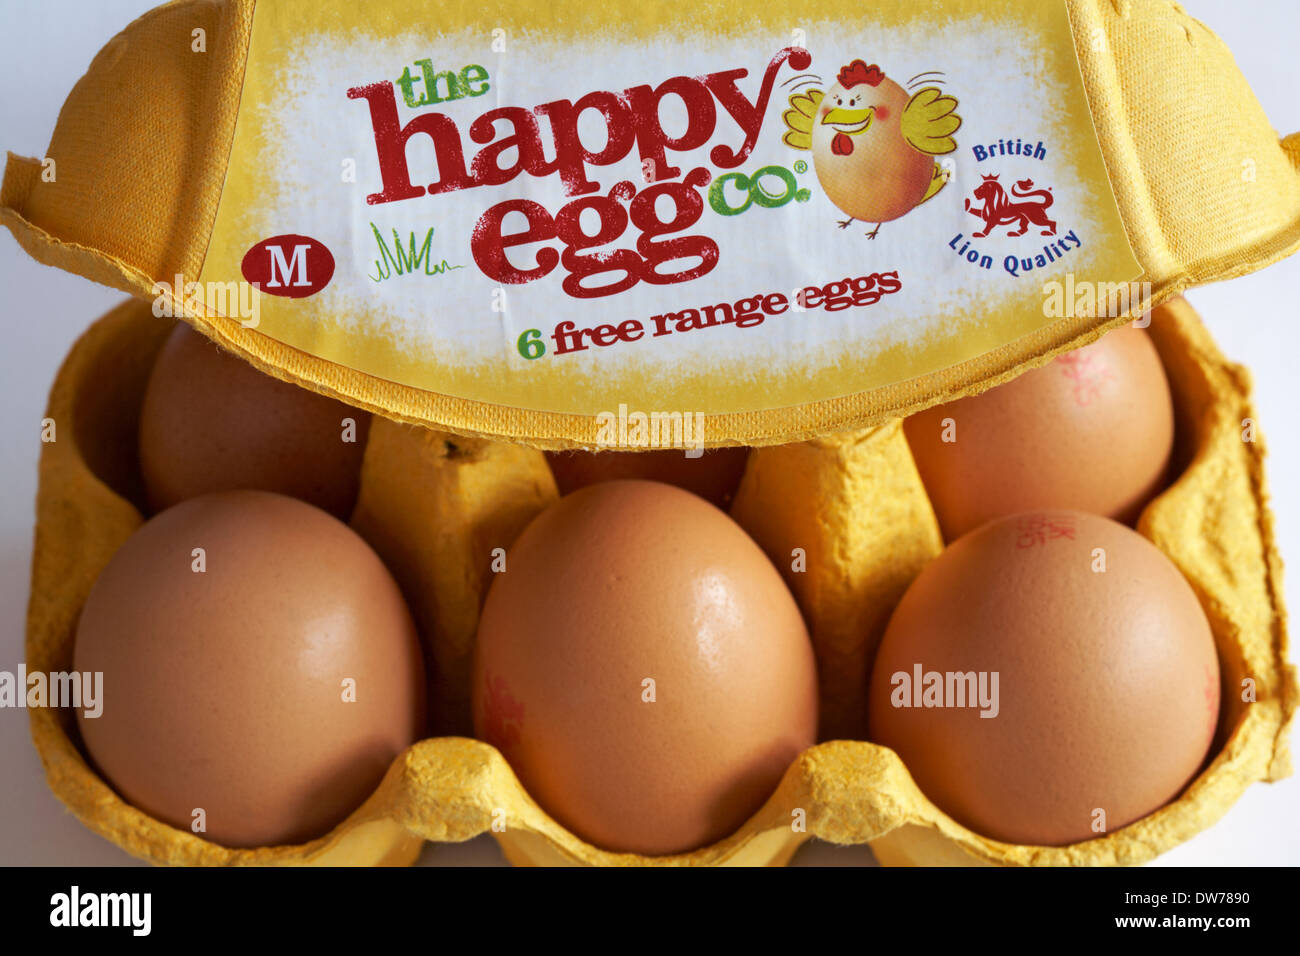 Scatola in cartone della felice uovo co 6 free range uova British Lion qualità M con coperchio aperto per mostrare i contenuti Foto Stock